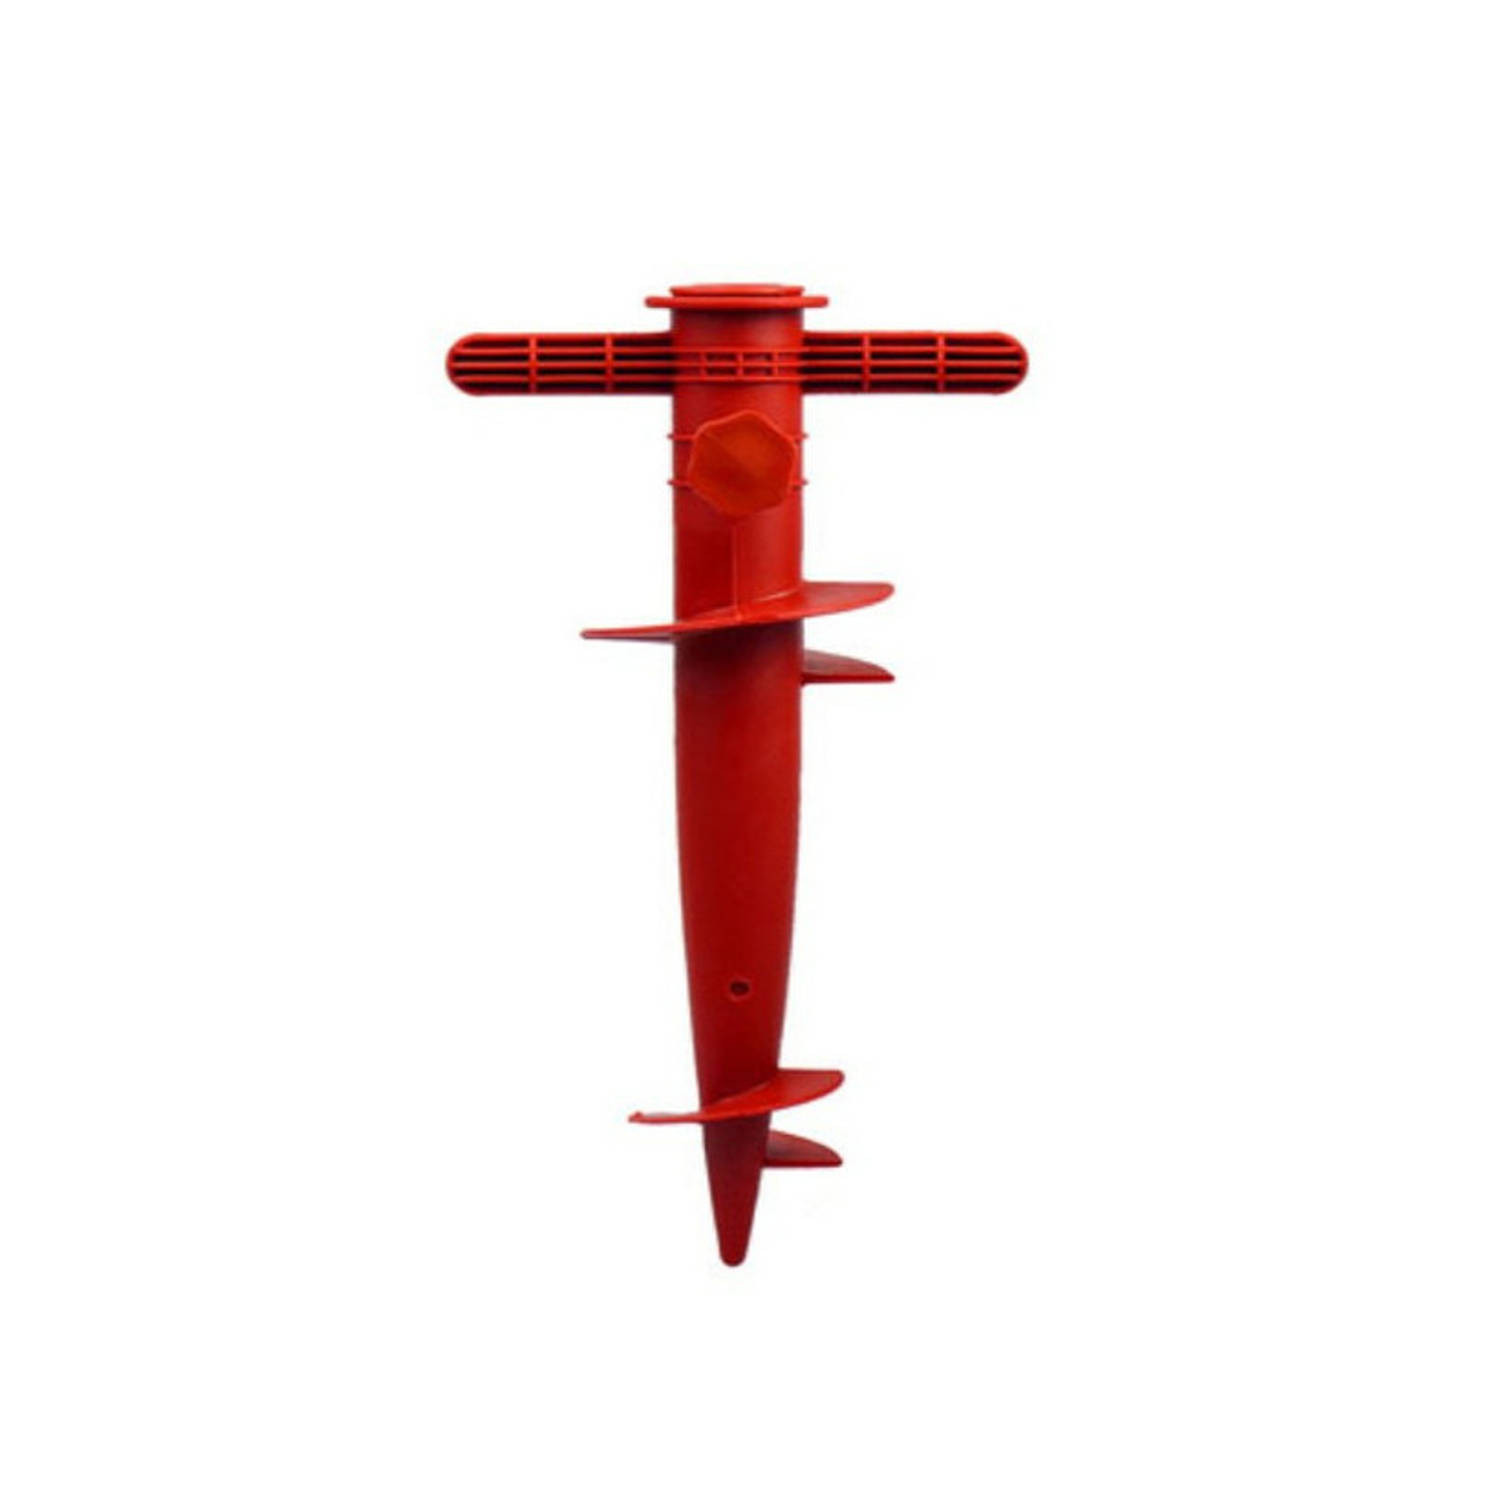 Parasolharing - rood - kunststof - D22-32 mm x H31 cm - Parasolvoeten